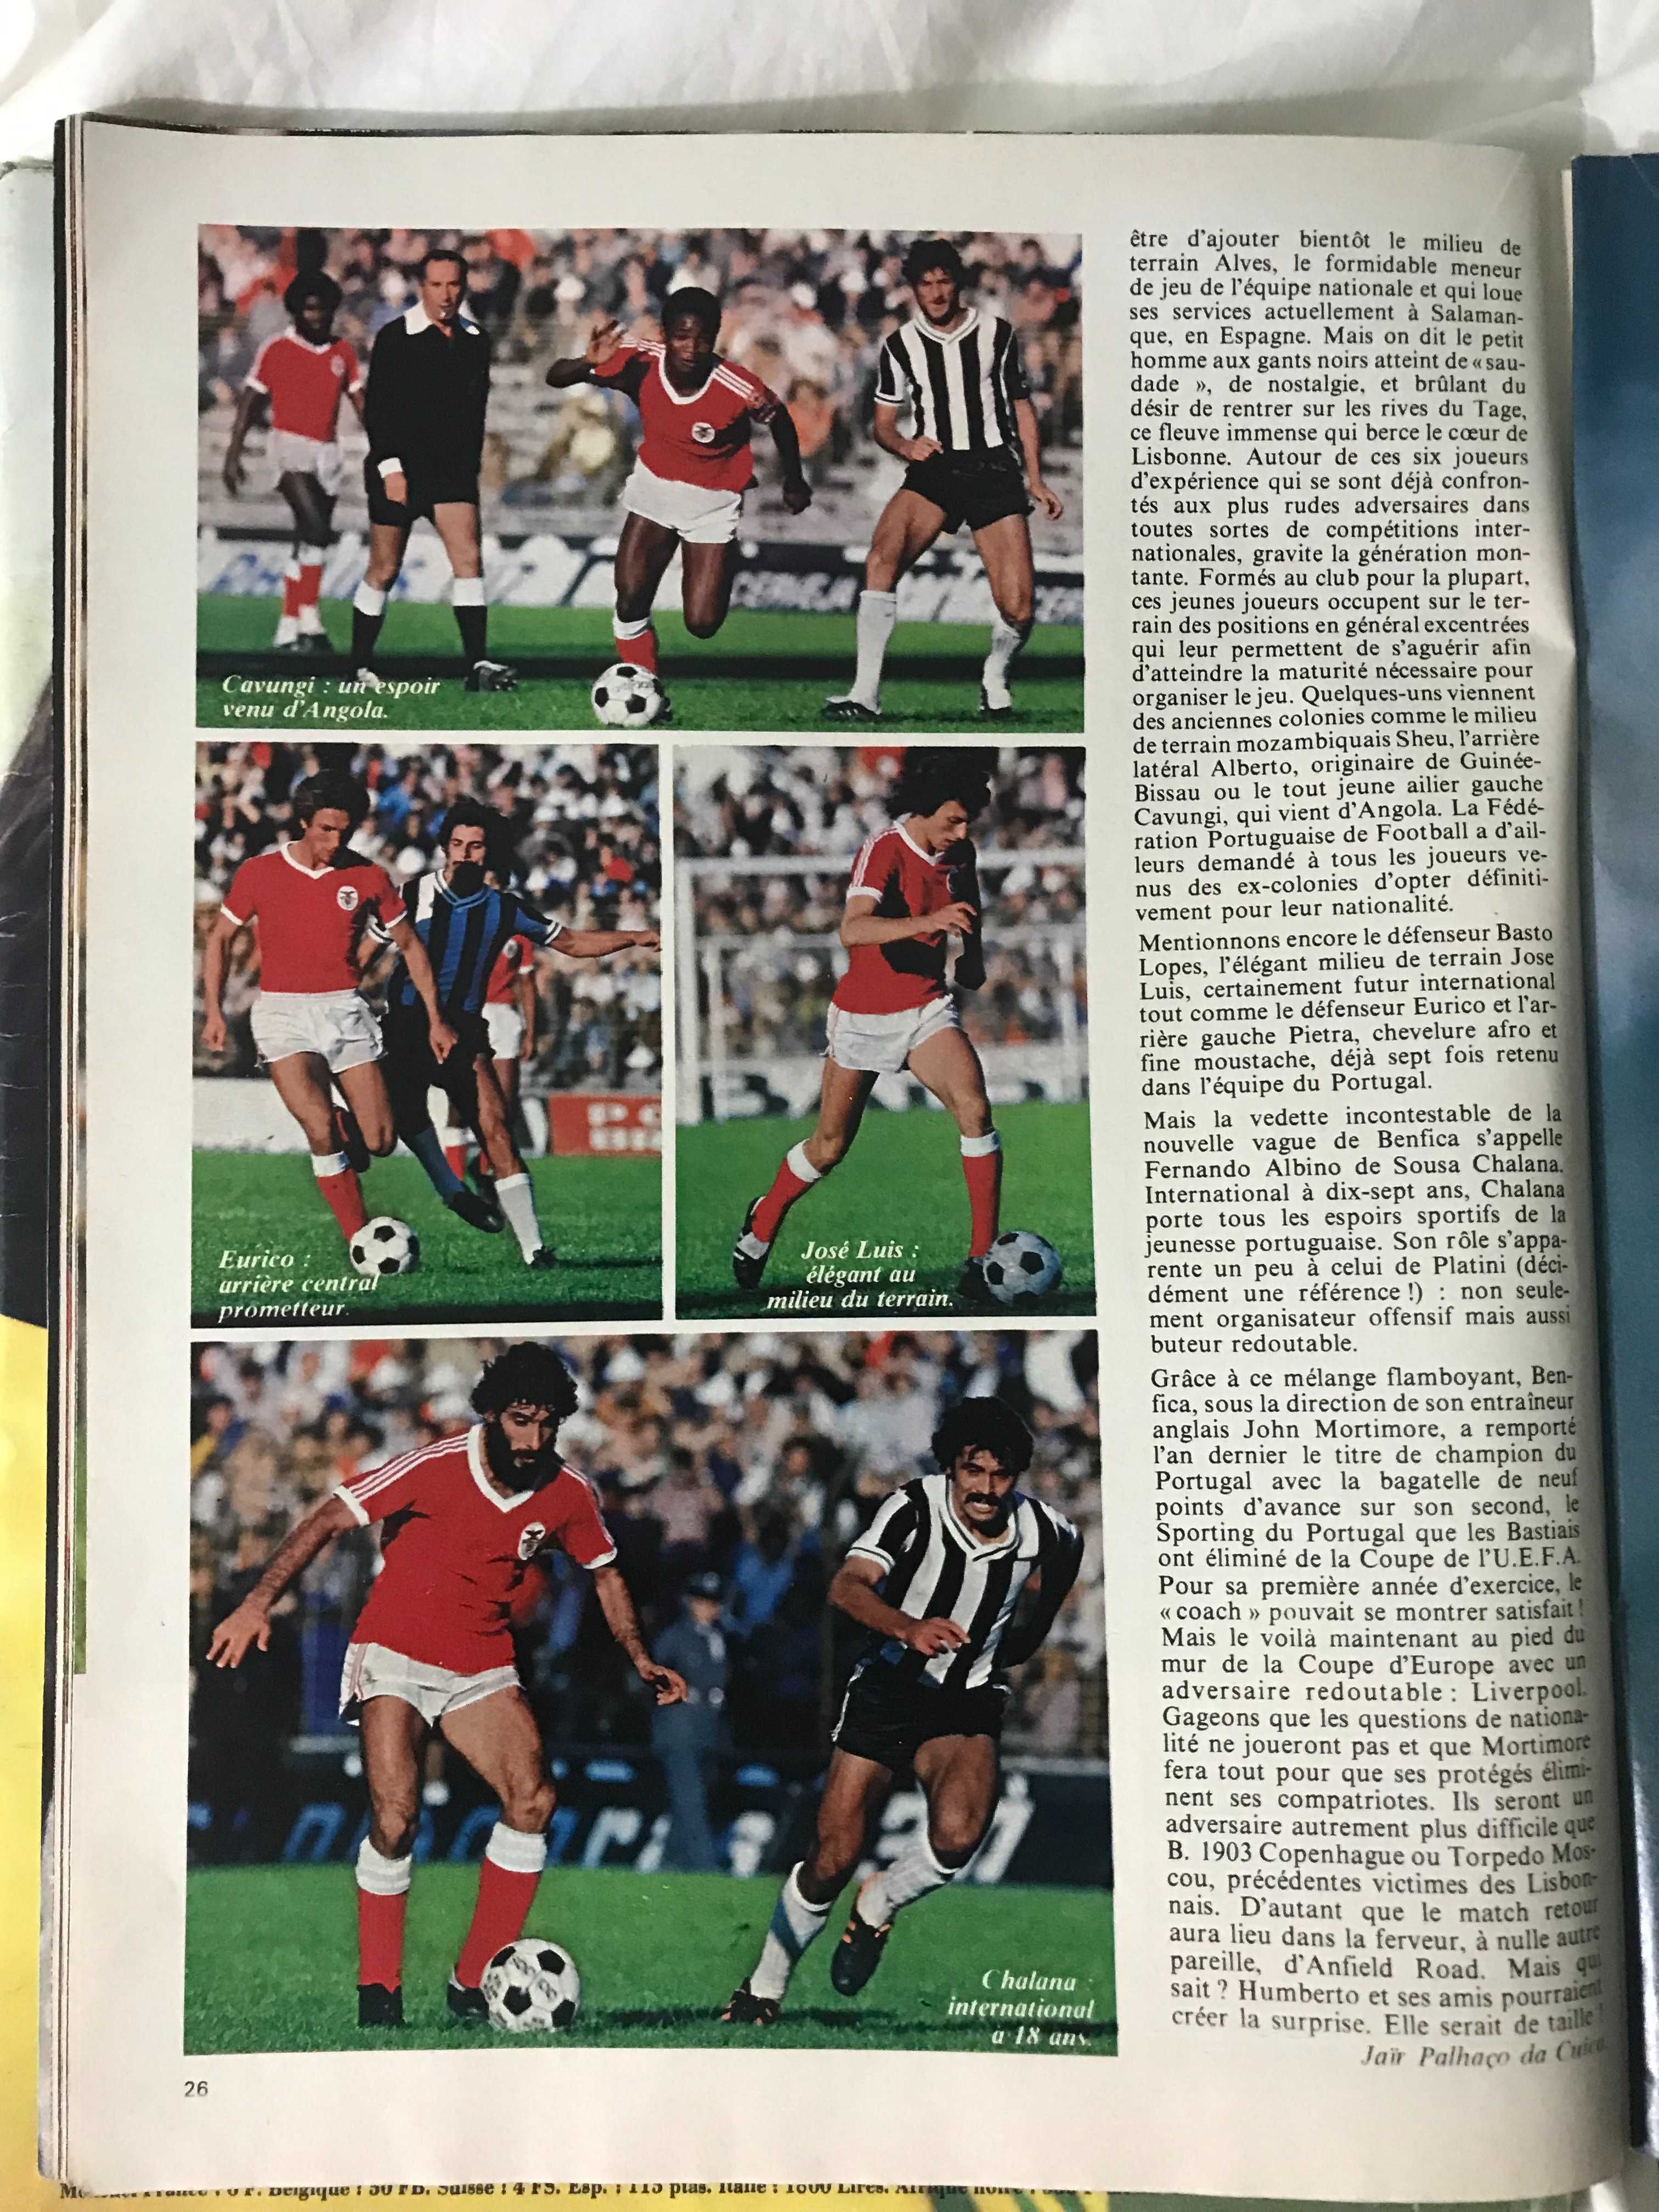 Onze, revista francesa de futebol (1978)